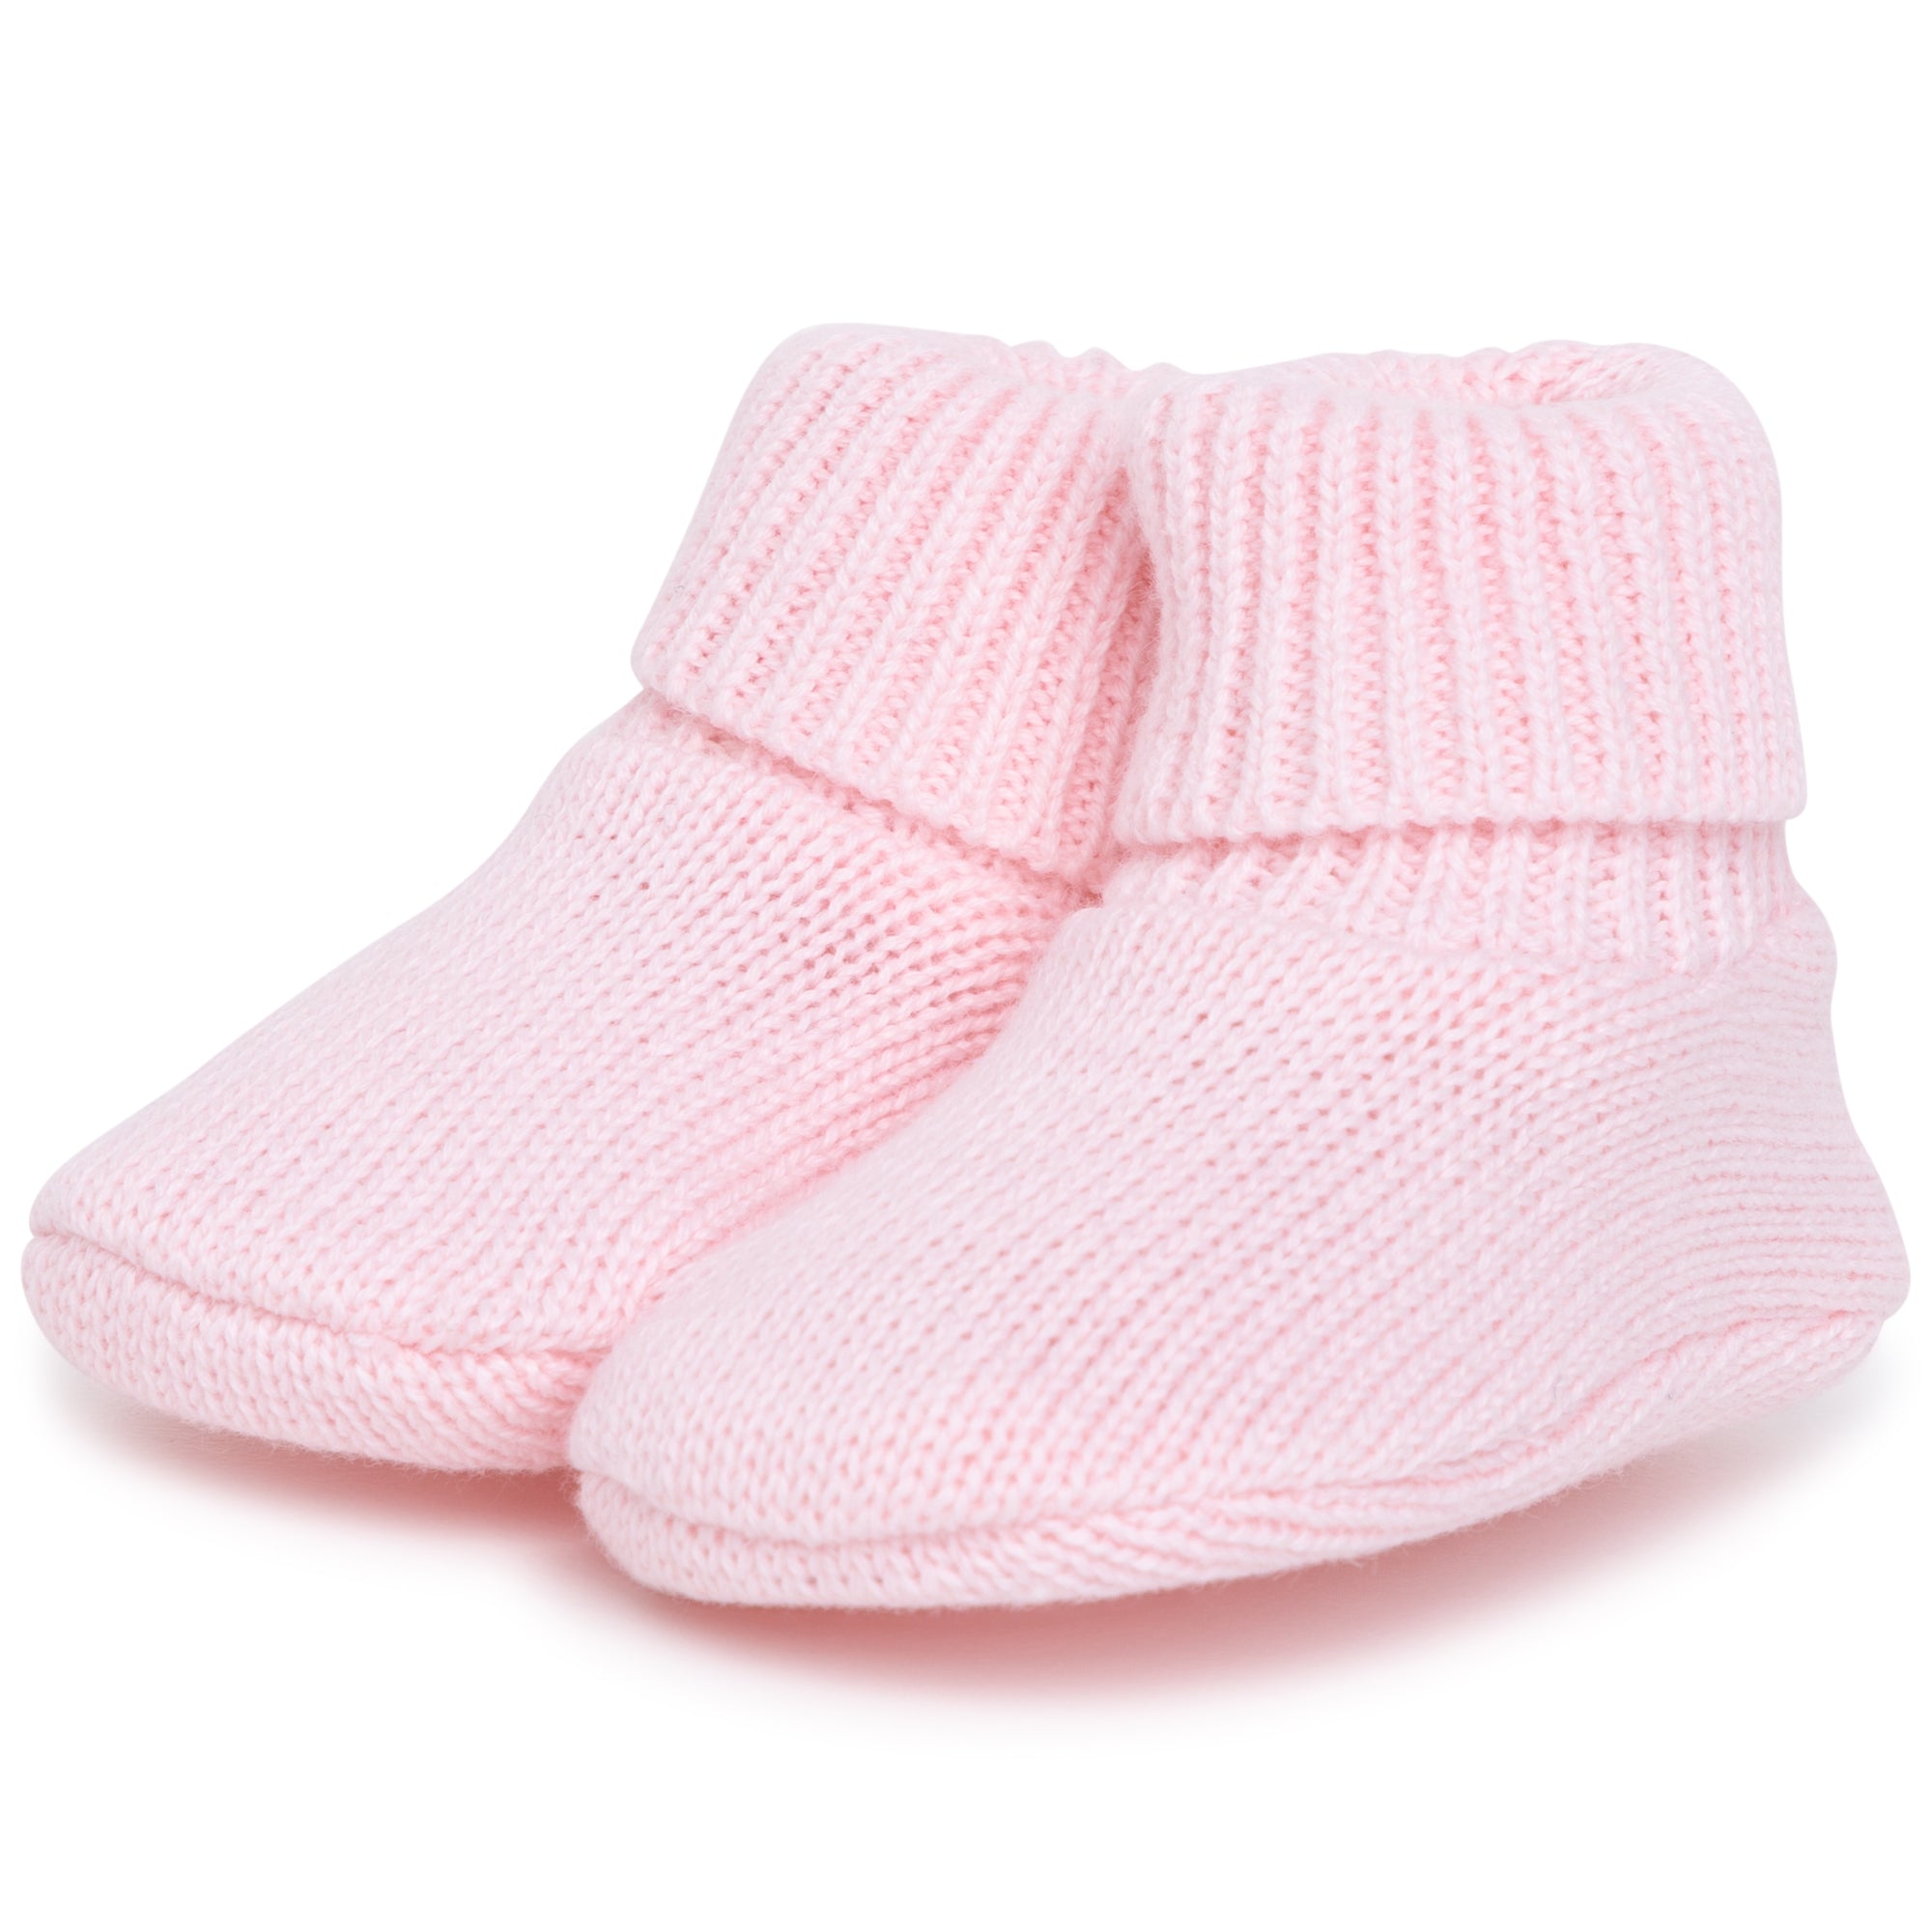 Hugo Boss Baby Girls Hat and Socks Set